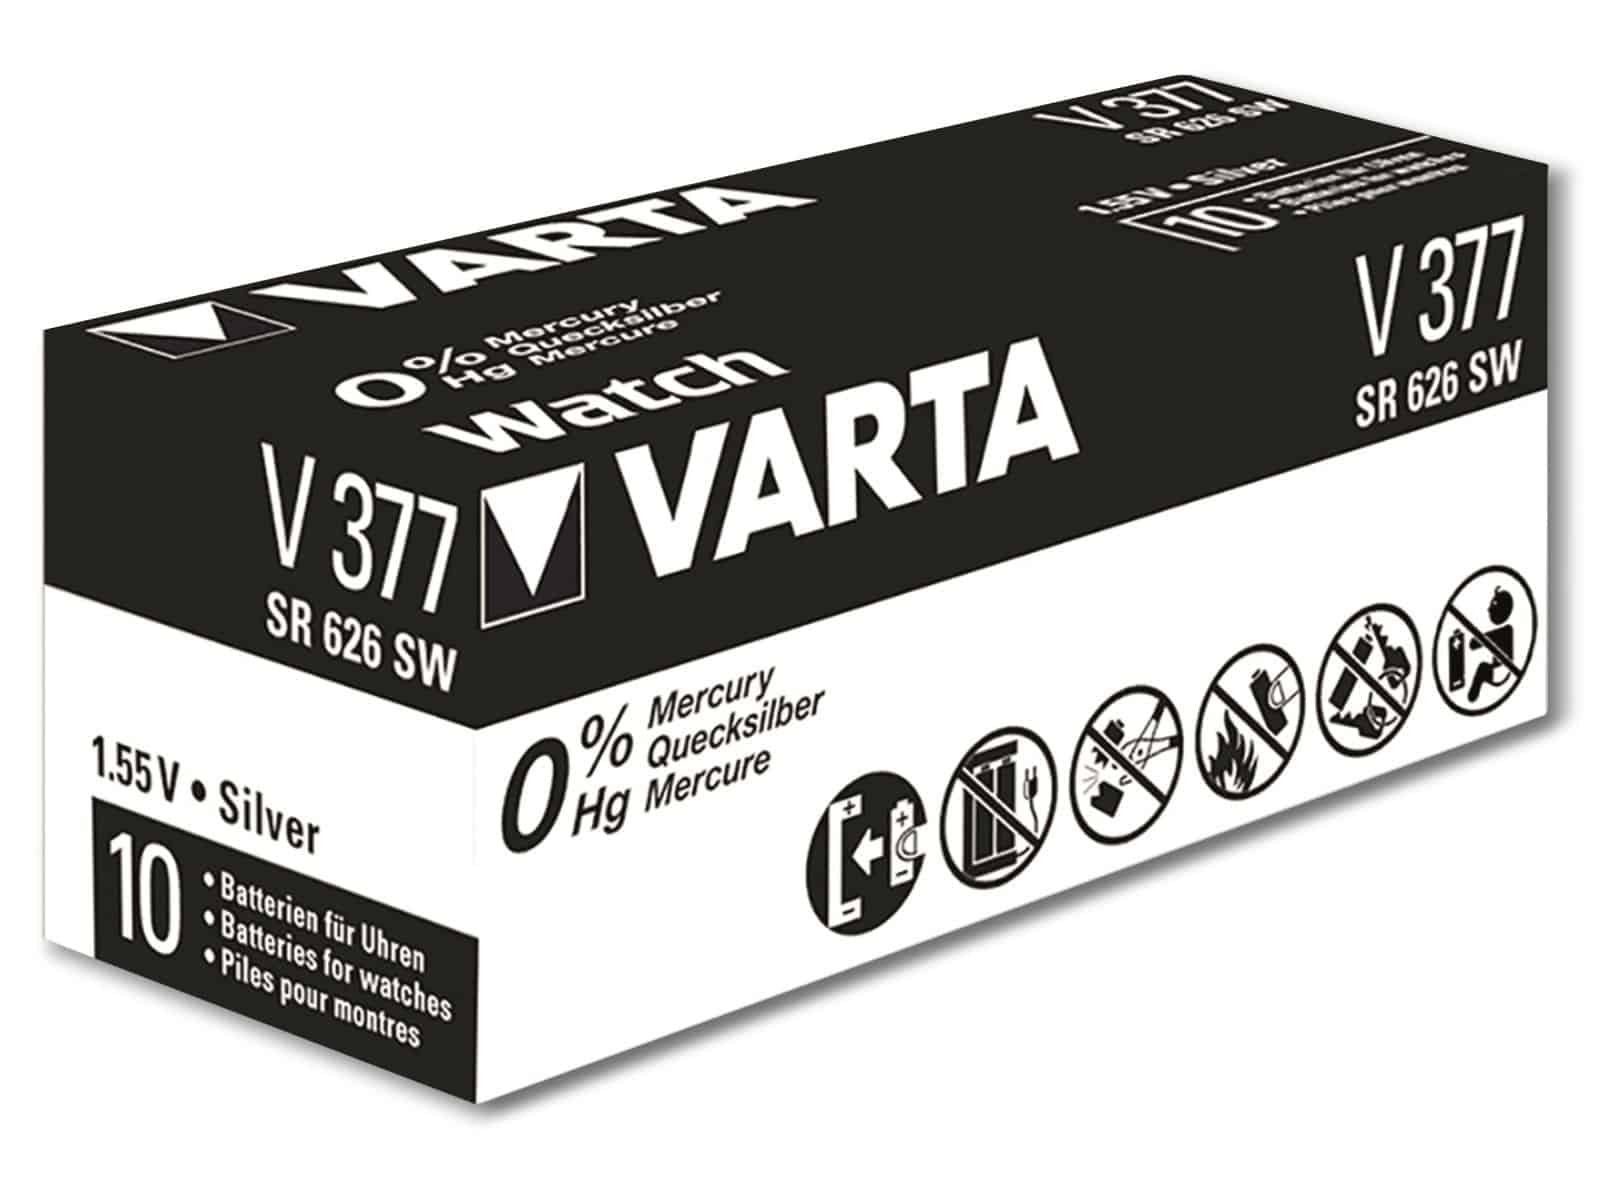 [Zuverlässiger Inlandsversand] VARTA VARTA Oxide, 377 1.55V Knopfzelle Knopfzelle SR66, Silver